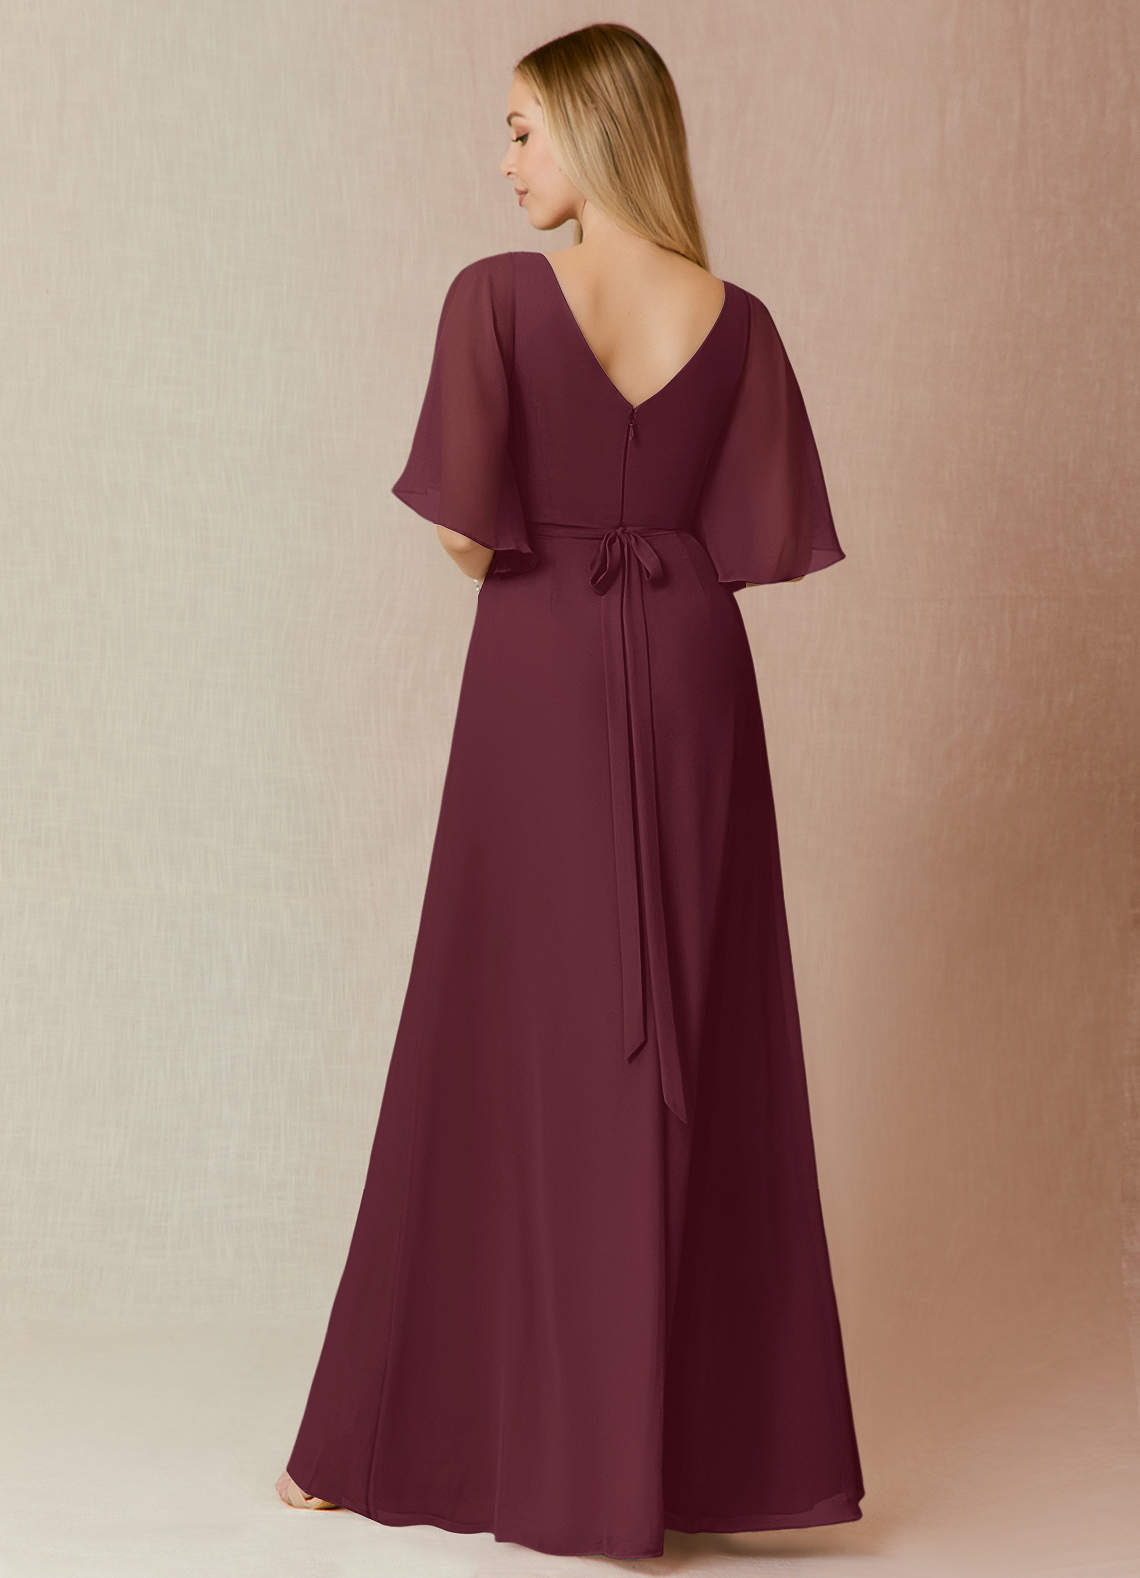 Azazie Cierra Bridesmaid Dresses A-Line V-Neck Chiffon Floor-Length Dress image1